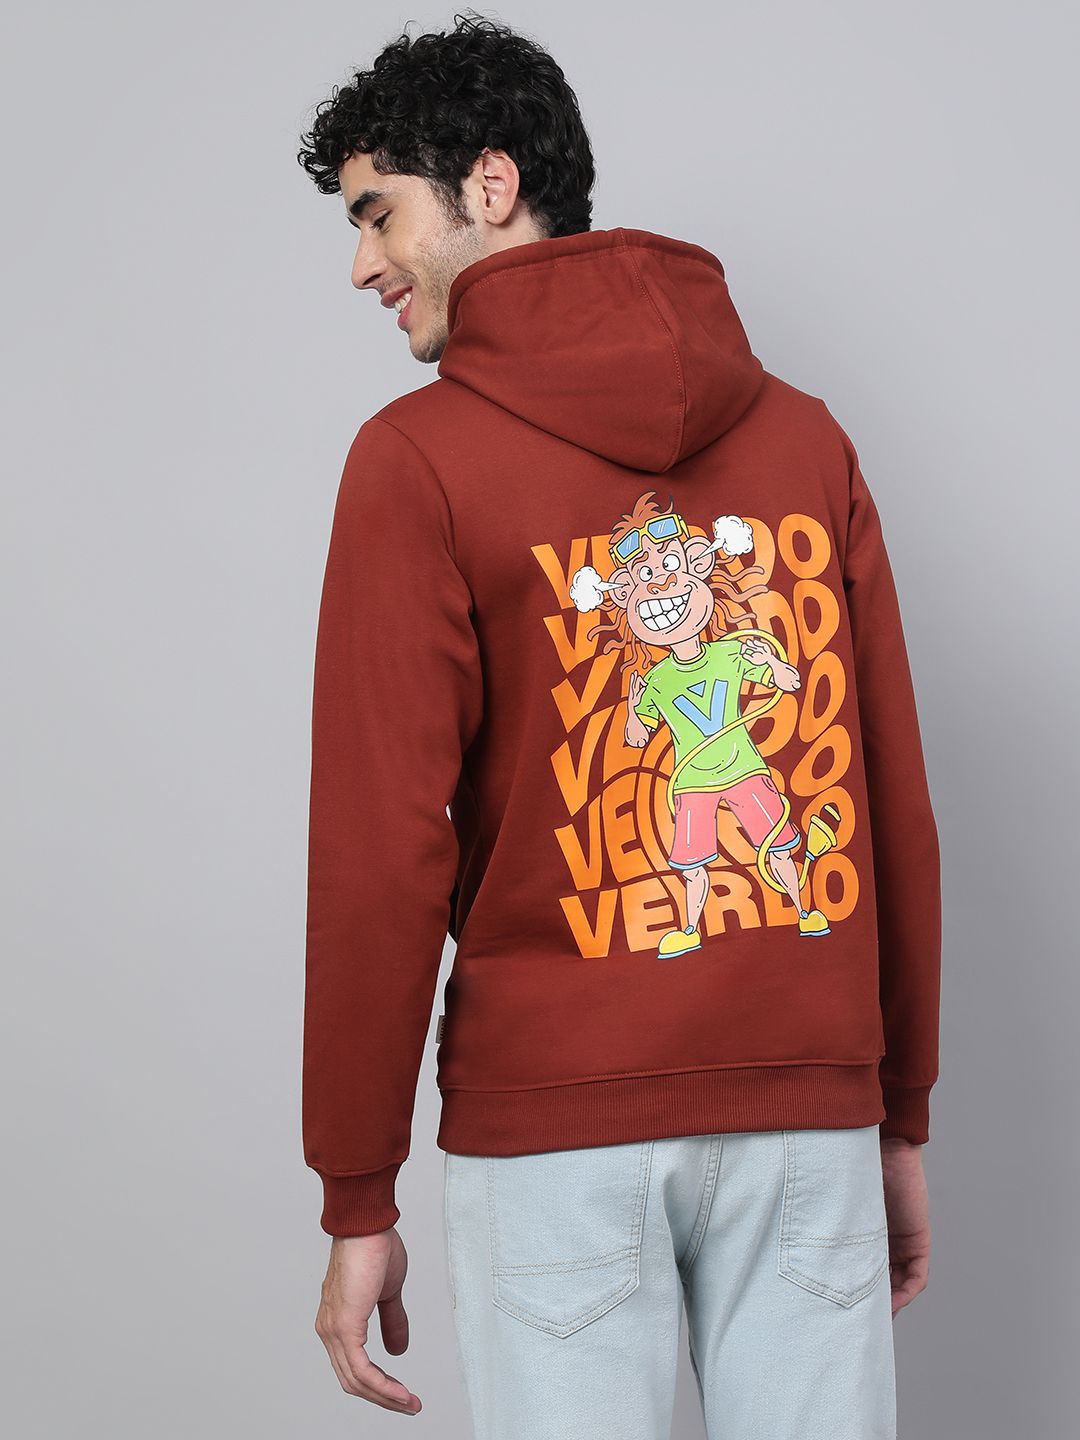     			Veirdo - Rust Fleece Regular Fit Men's Sweatshirt ( Pack of 1 )